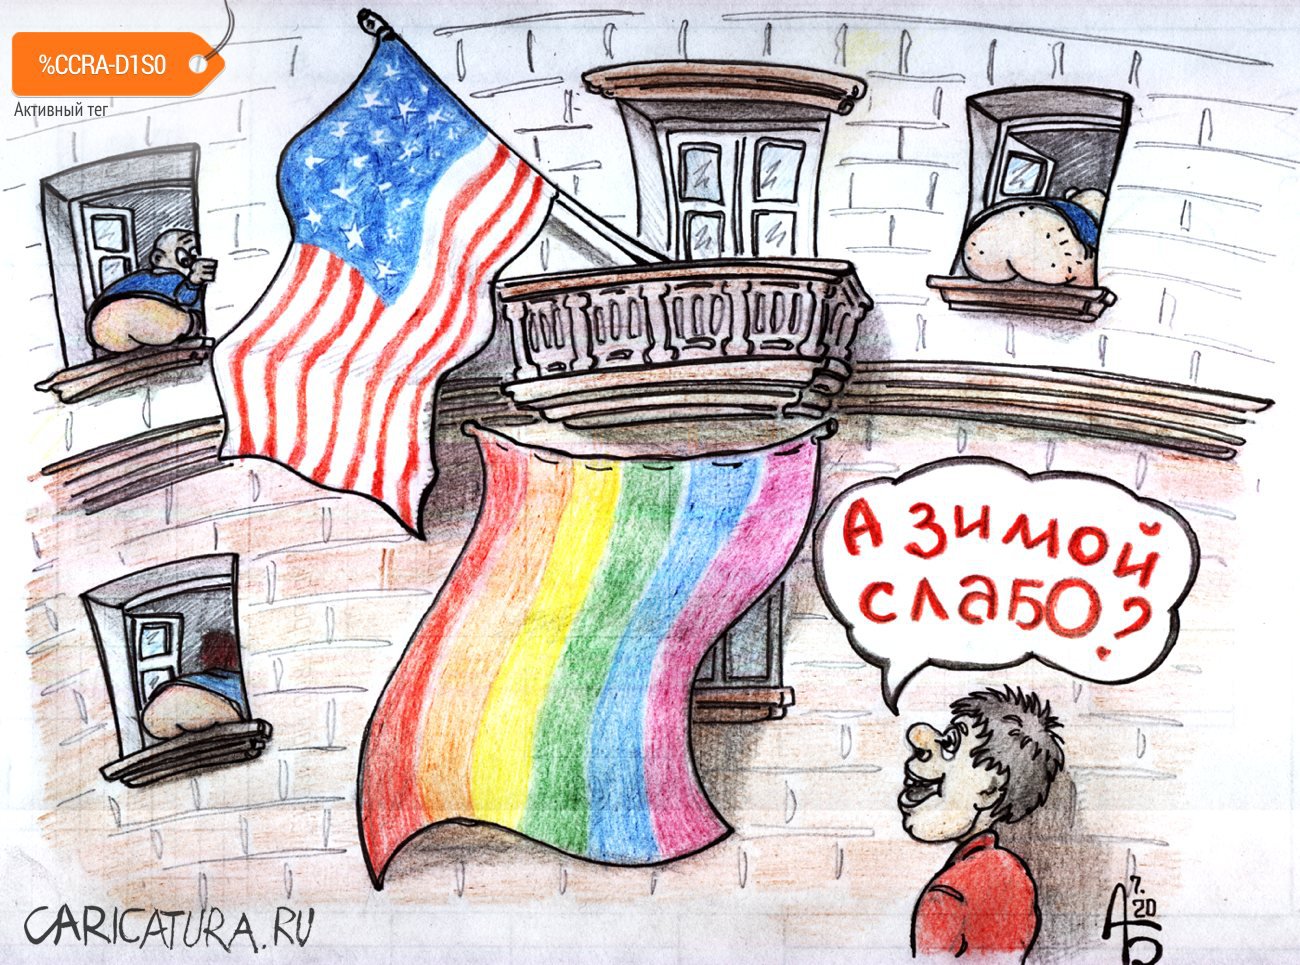 Карикатура "Посольский парад", Александр Богданов